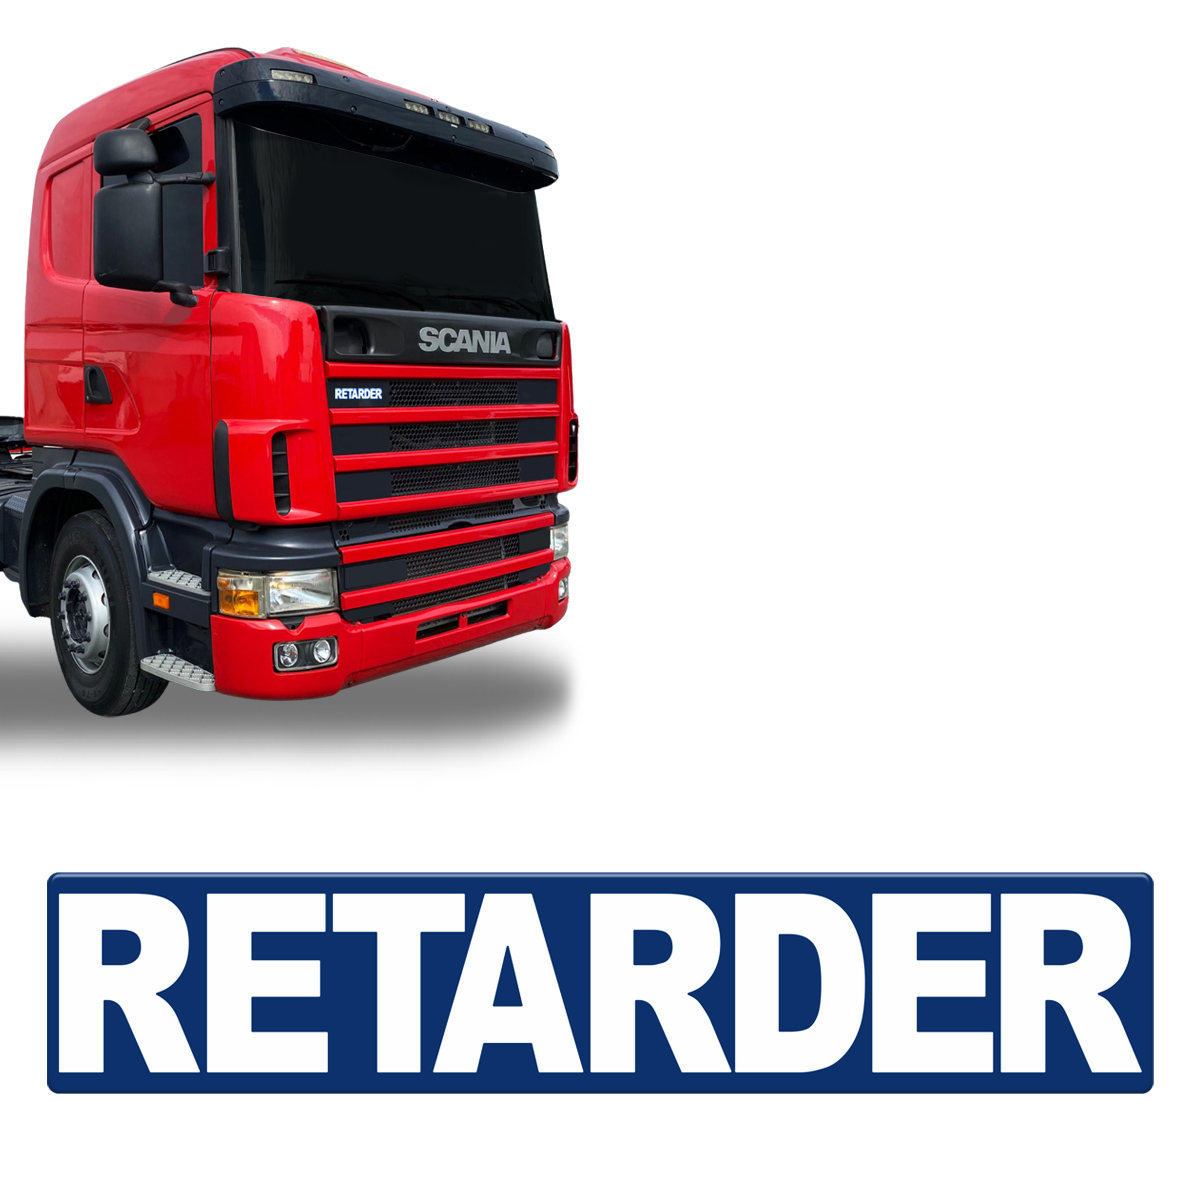 Adesivo Retarder Scania R400 Frontal Resinado Unitário